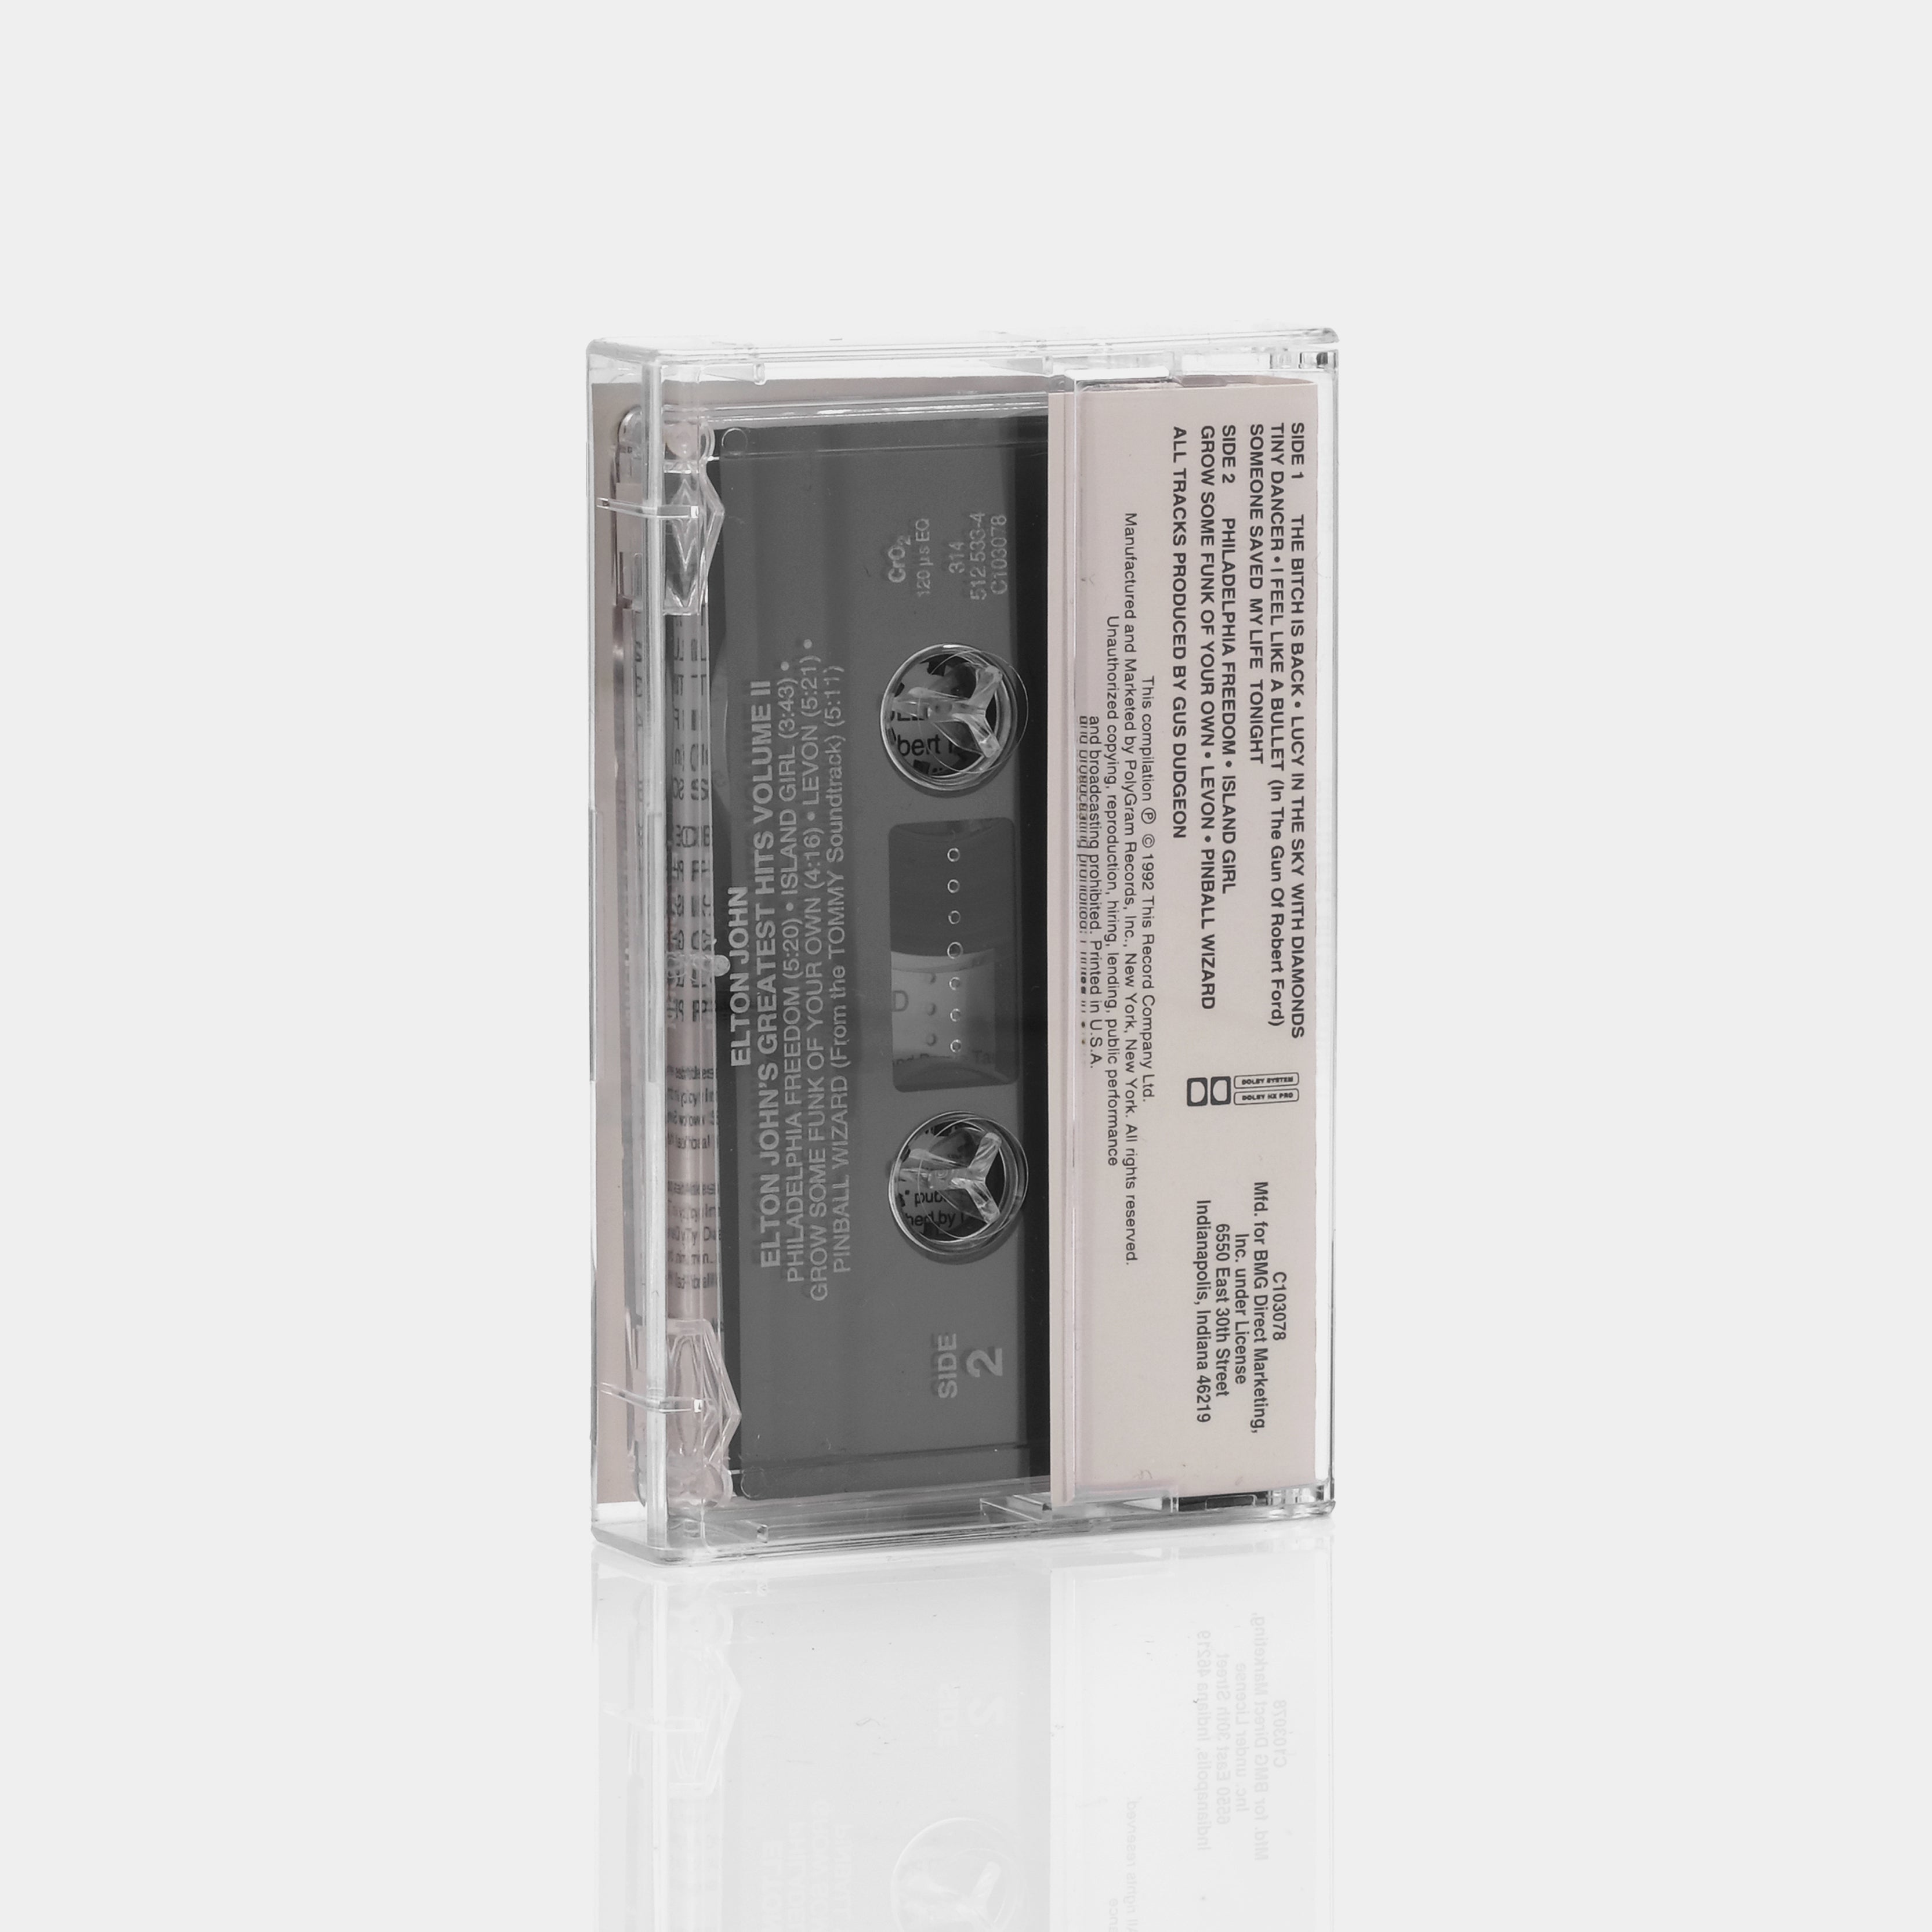 Elton John - Greatest Hits Volume II Cassette Tape